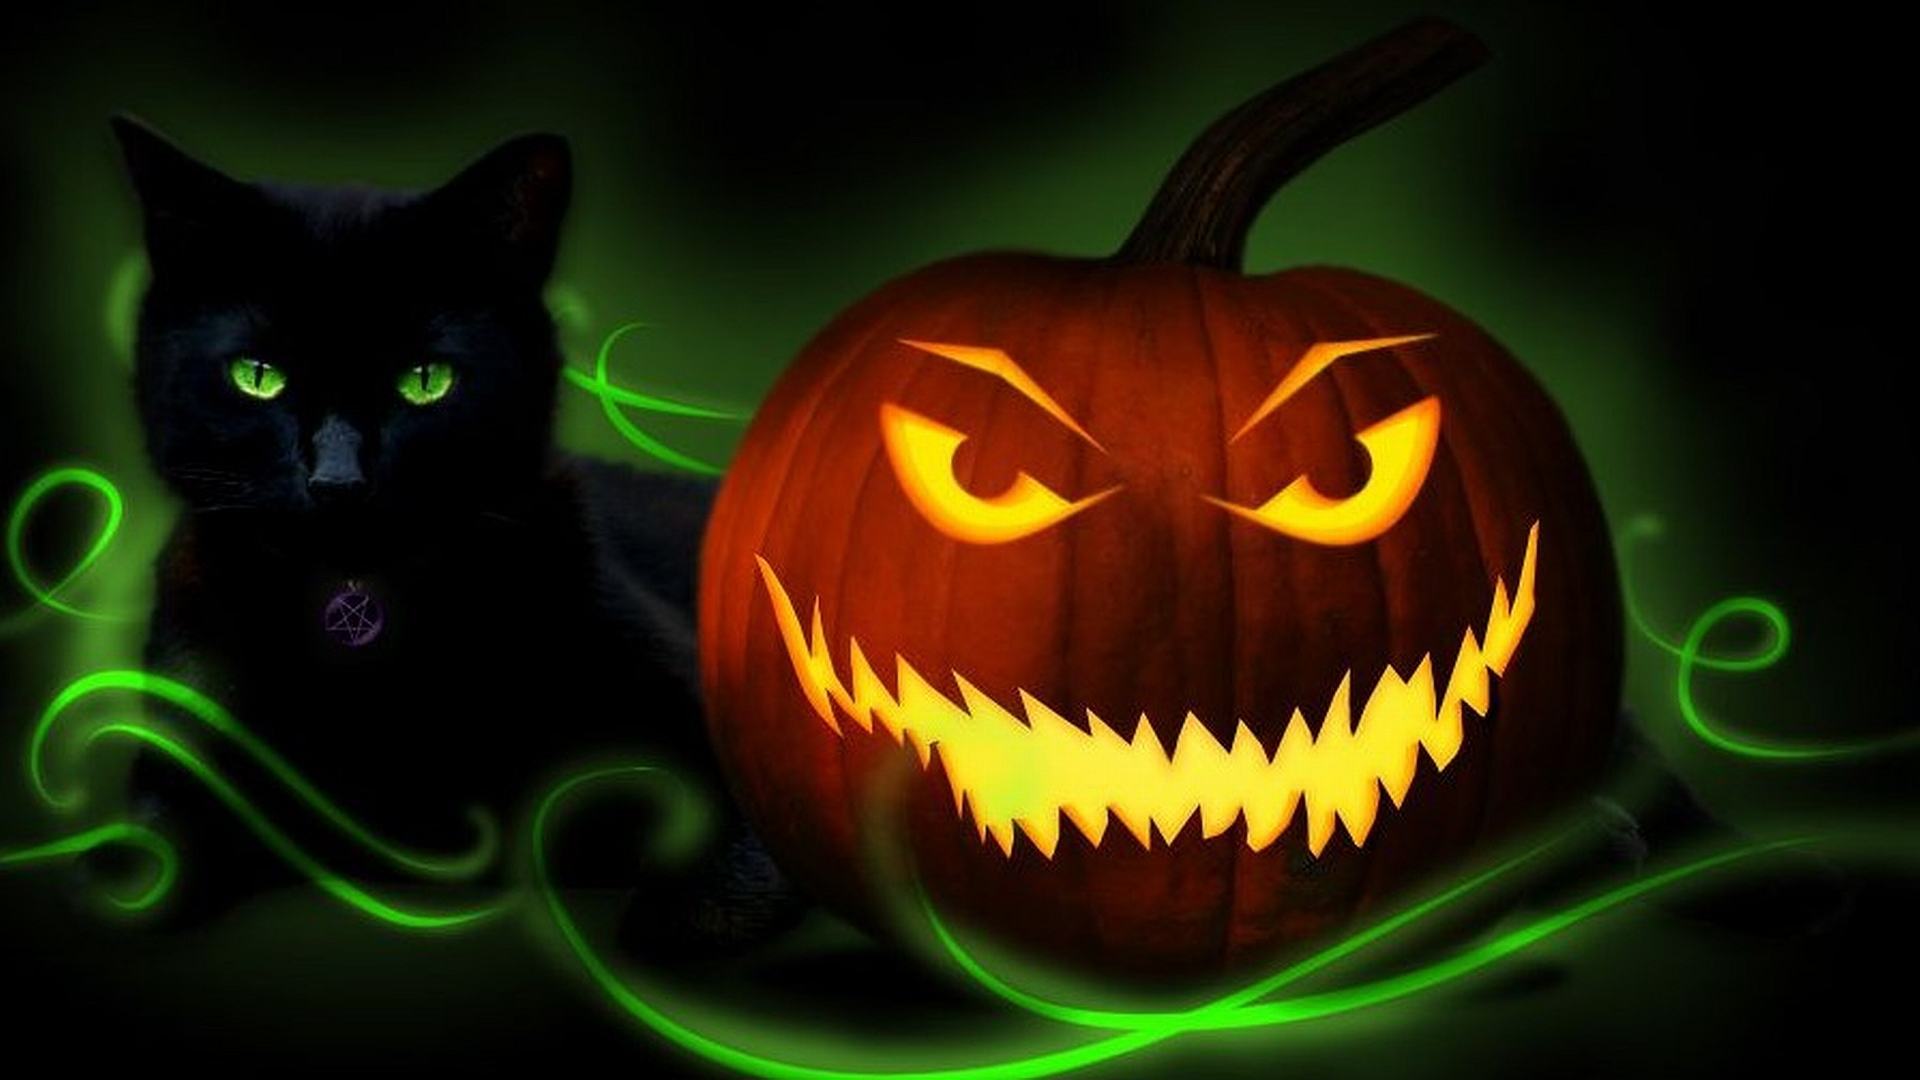 Hình nền máy tính 3D bí ngô và mèo đen cực đẹp cho đêm Halloween